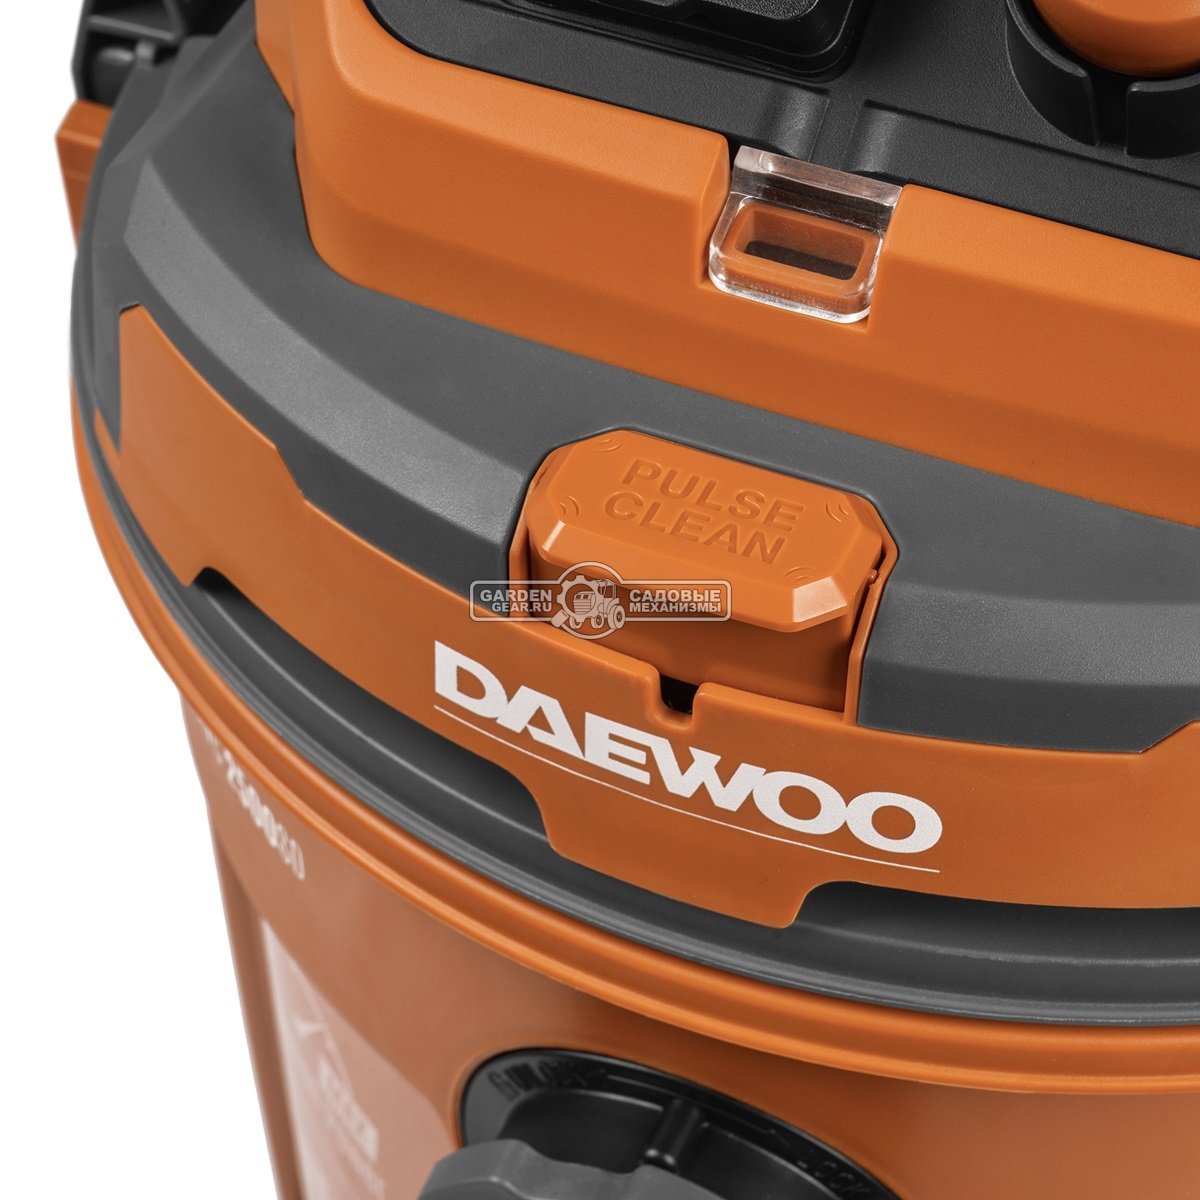 Пылесос Daewoo DAVC 2500SD для сухой и влажной уборки (PRC, 1,4 кВт, 3000 л/мин, 210 мбар, контейнер 25 л., шланг 4 м., 9,7 кг.)